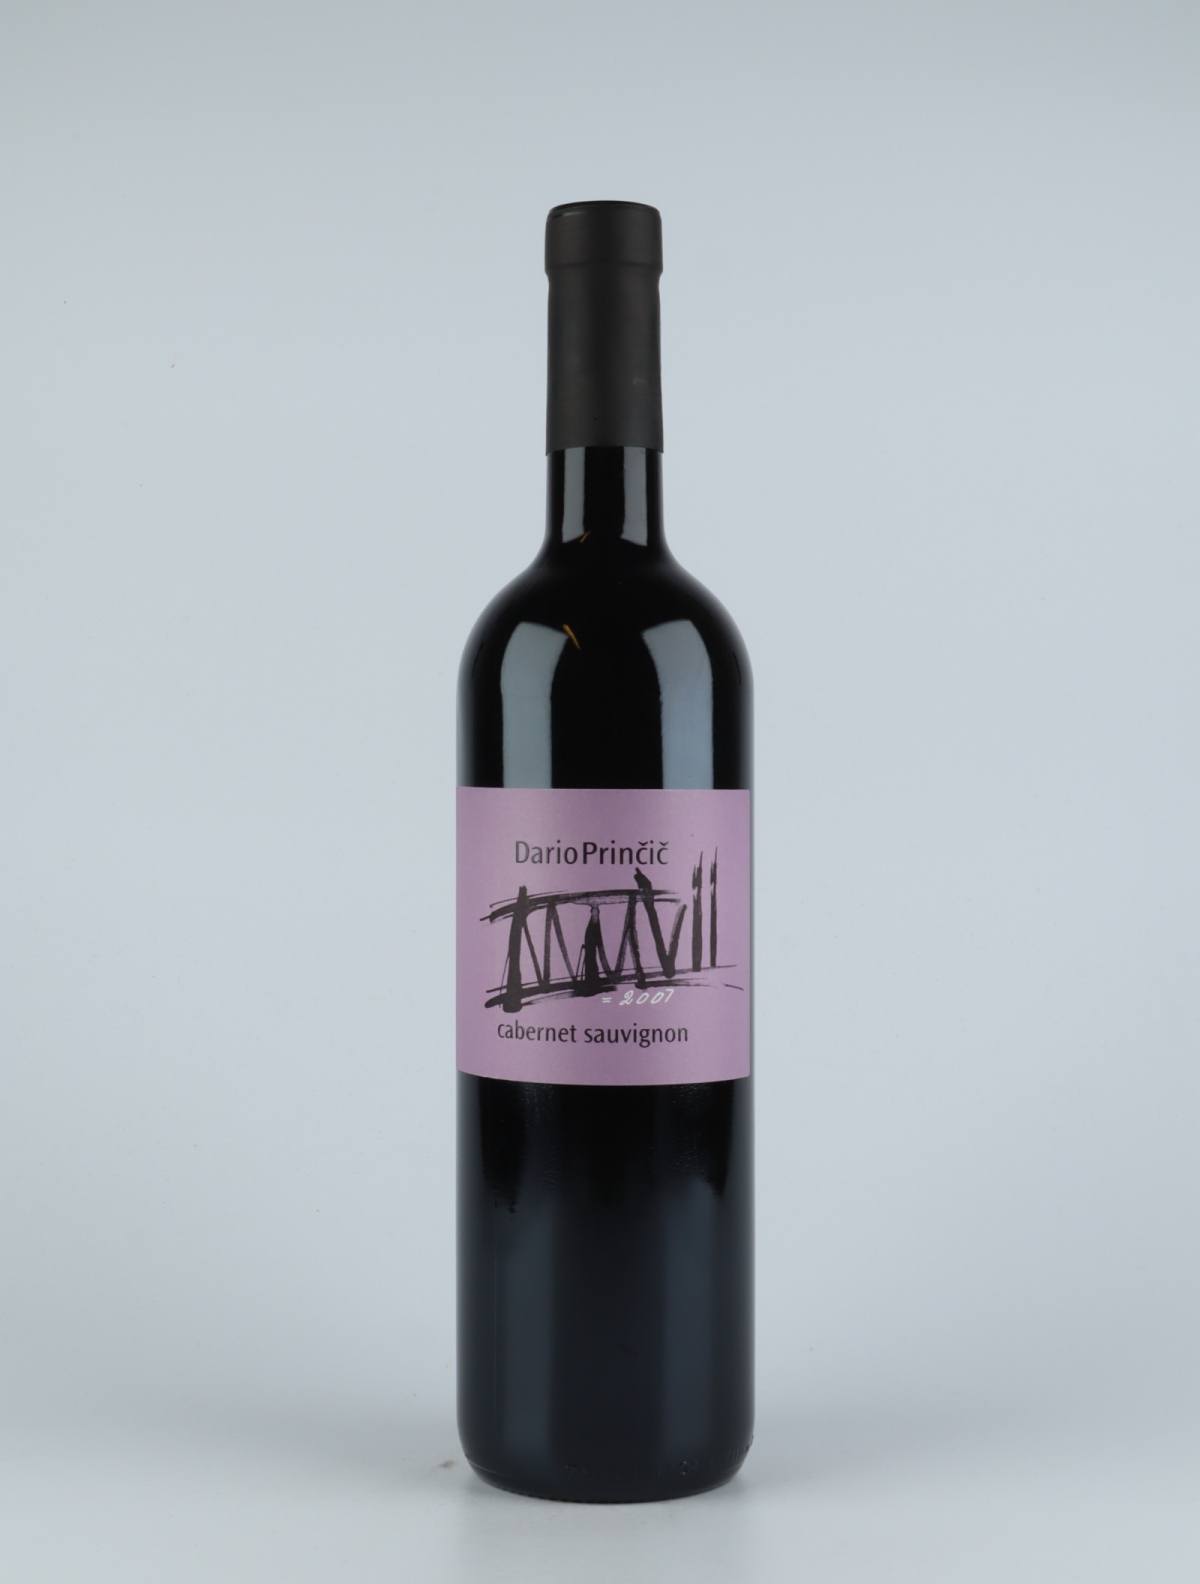 A bottle 2007 Cabernet Sauvignon Red wine from Dario Princic, Friuli in Italy